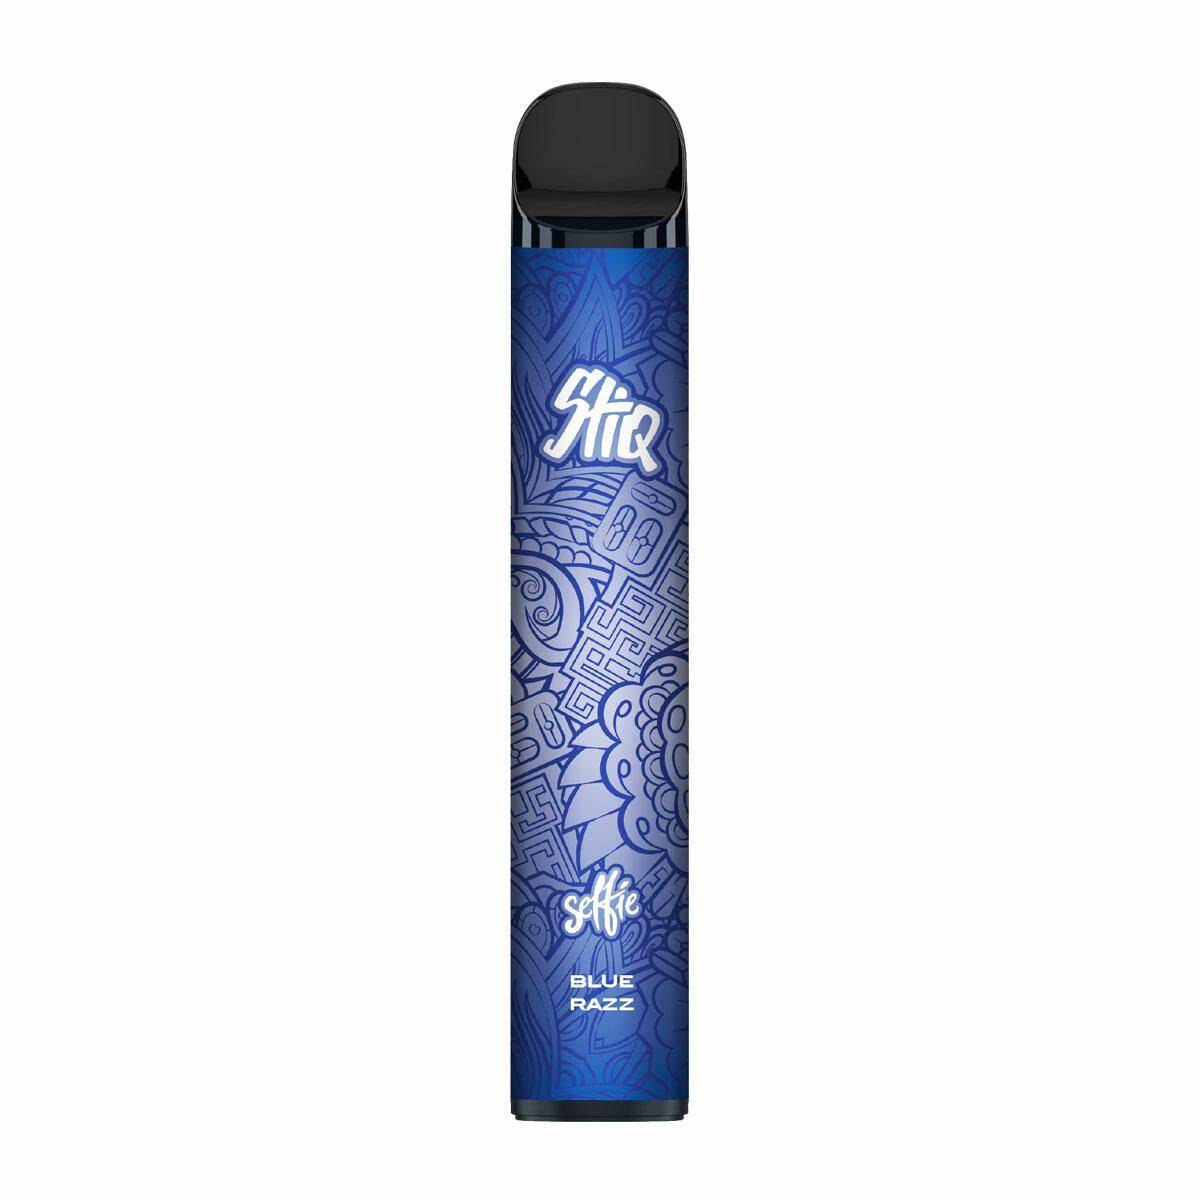 E-Inhalator Selfie Stiq 2500 - Blue Razz 0mg